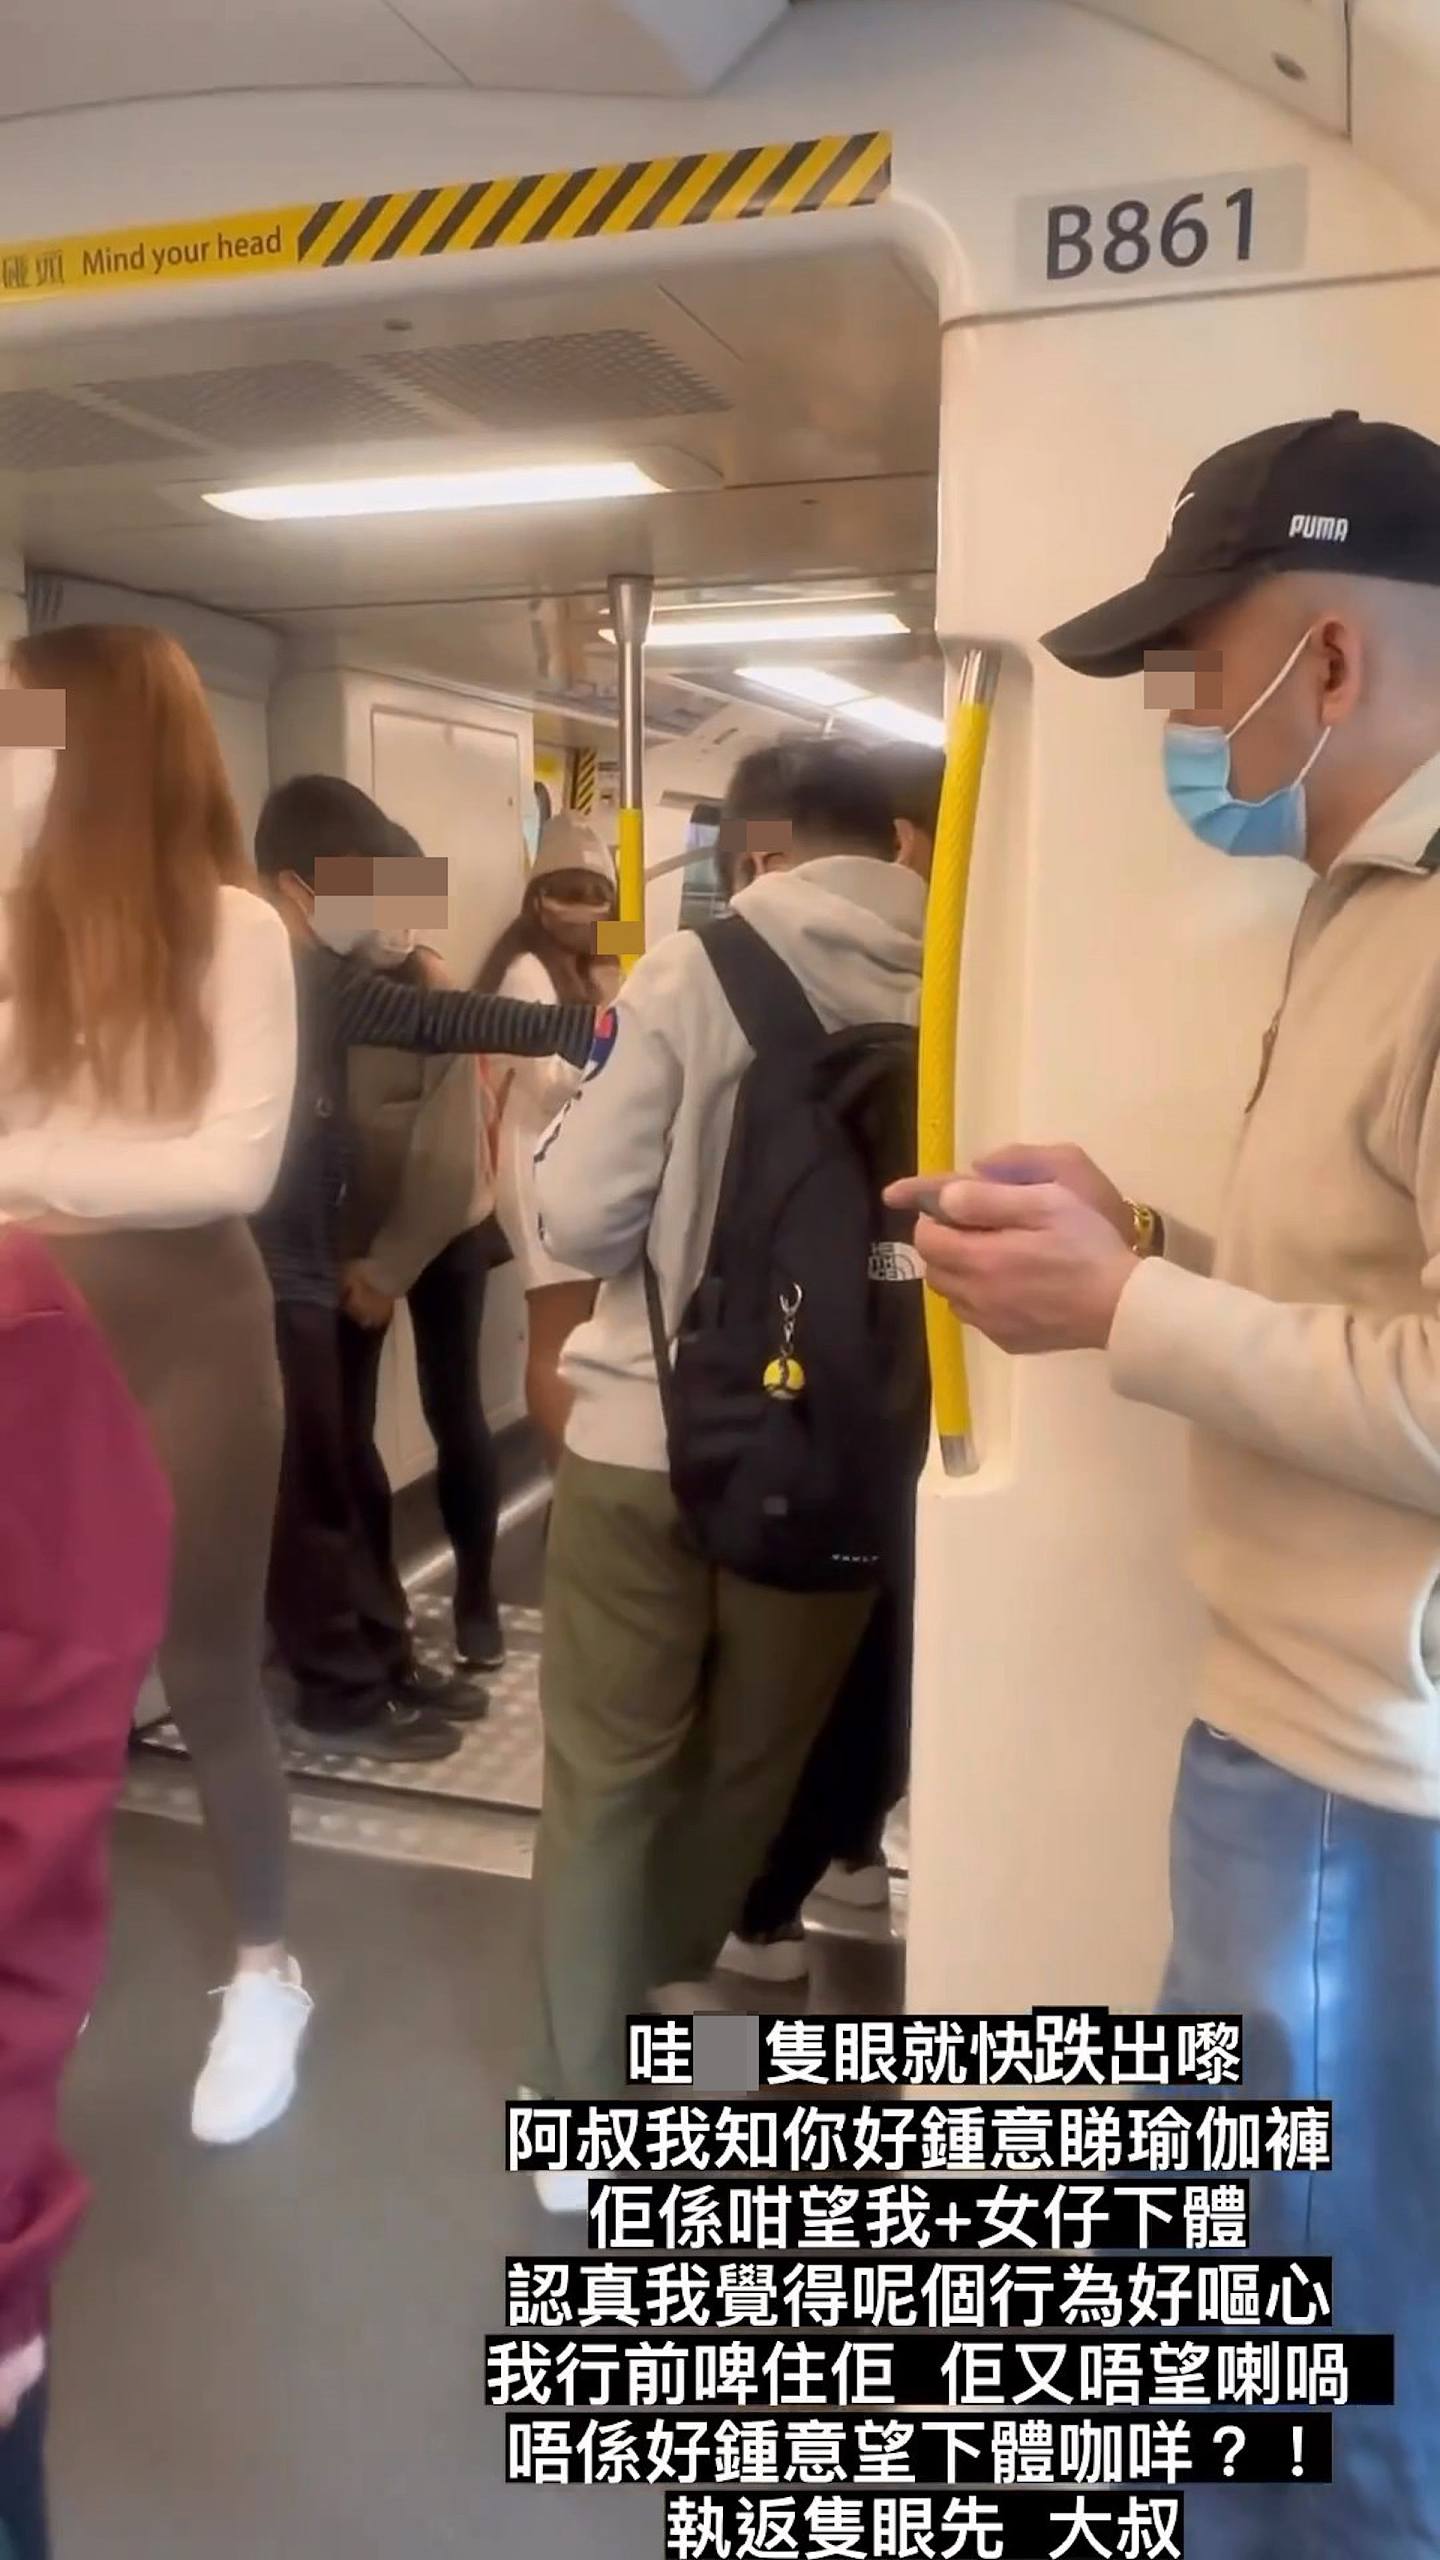 有港女就在IG發布影片，指乘搭港鐵時有一名中年漢「係咁望我」及另一女子下體，斥責「視姦」行為相當嘔心。（影片截圖）